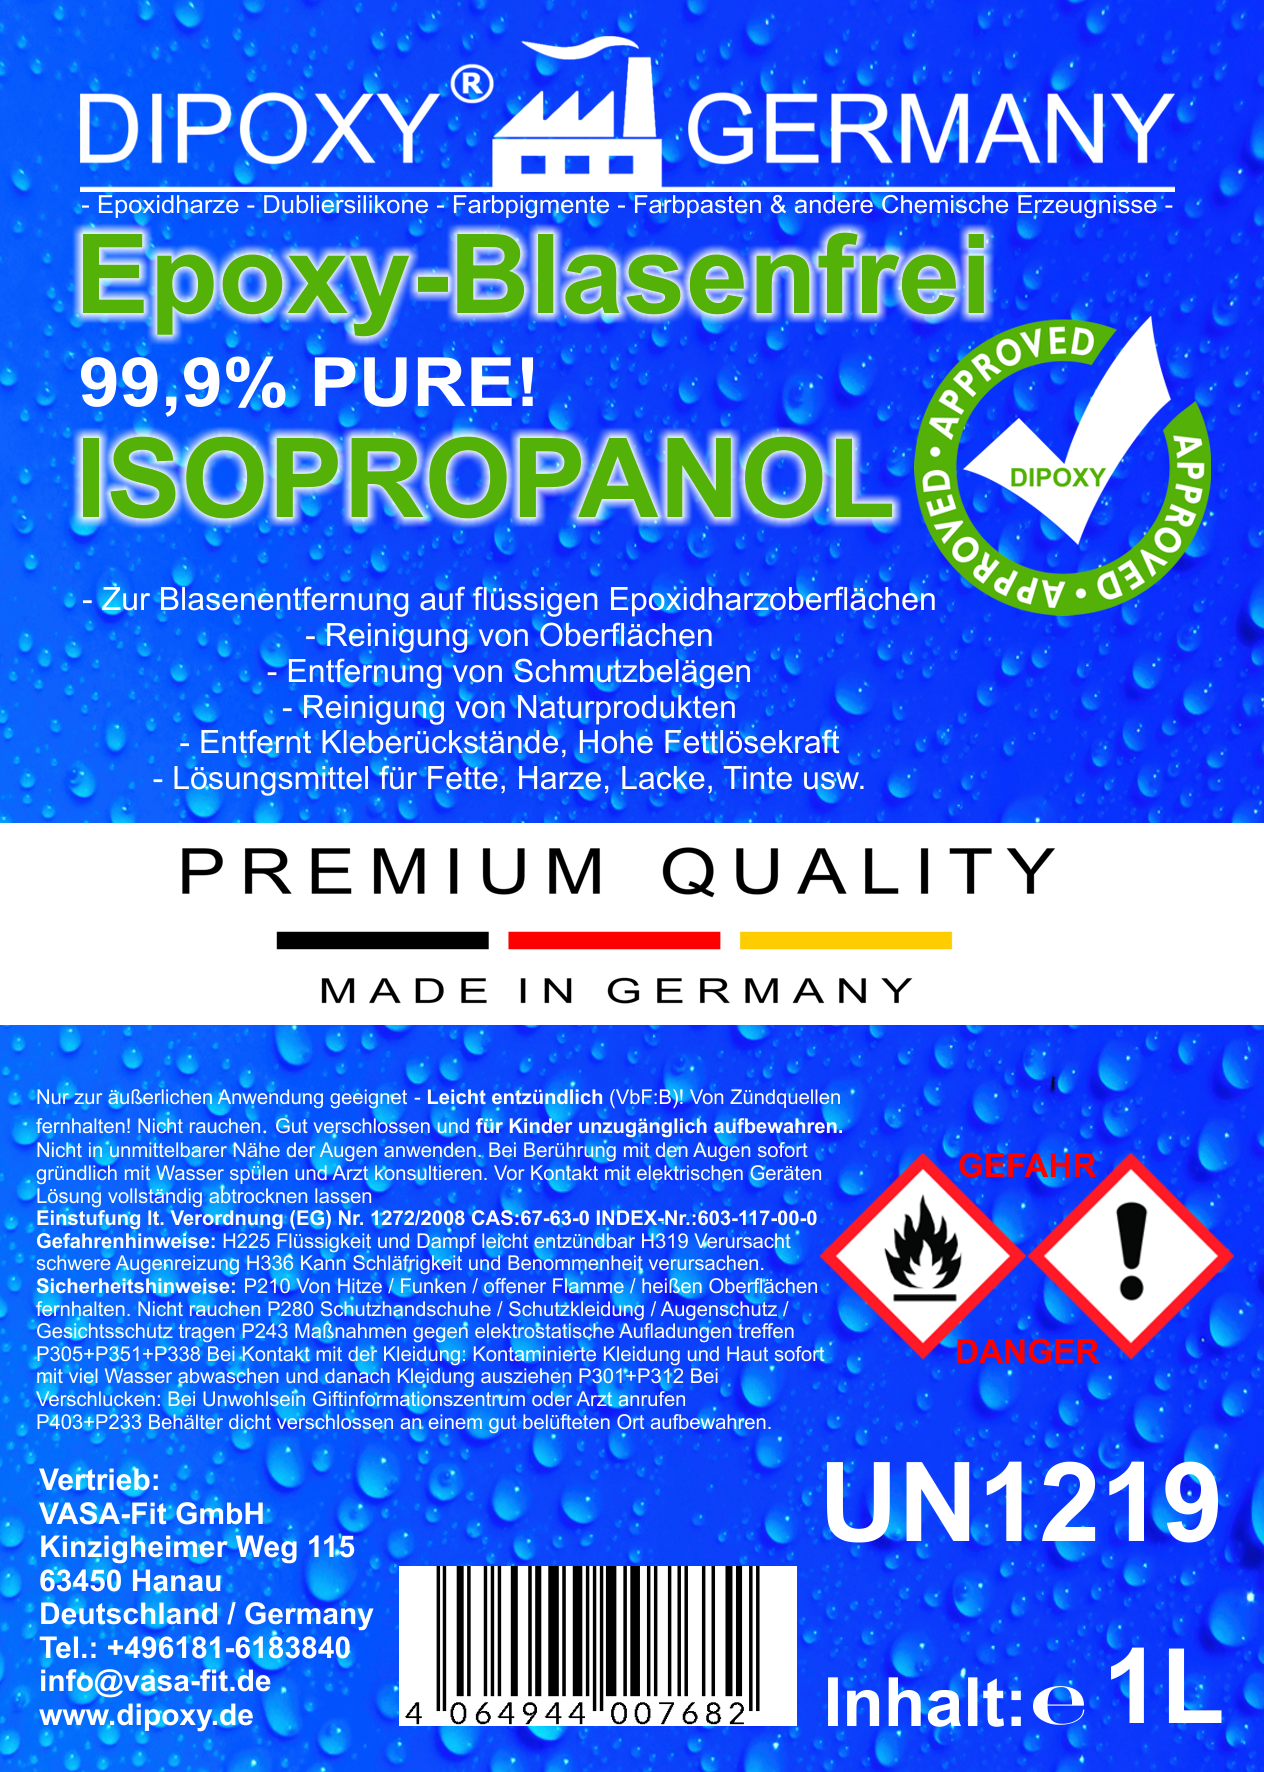 Isopropanol 99,9% rein, Epoxy-Blasenfrei